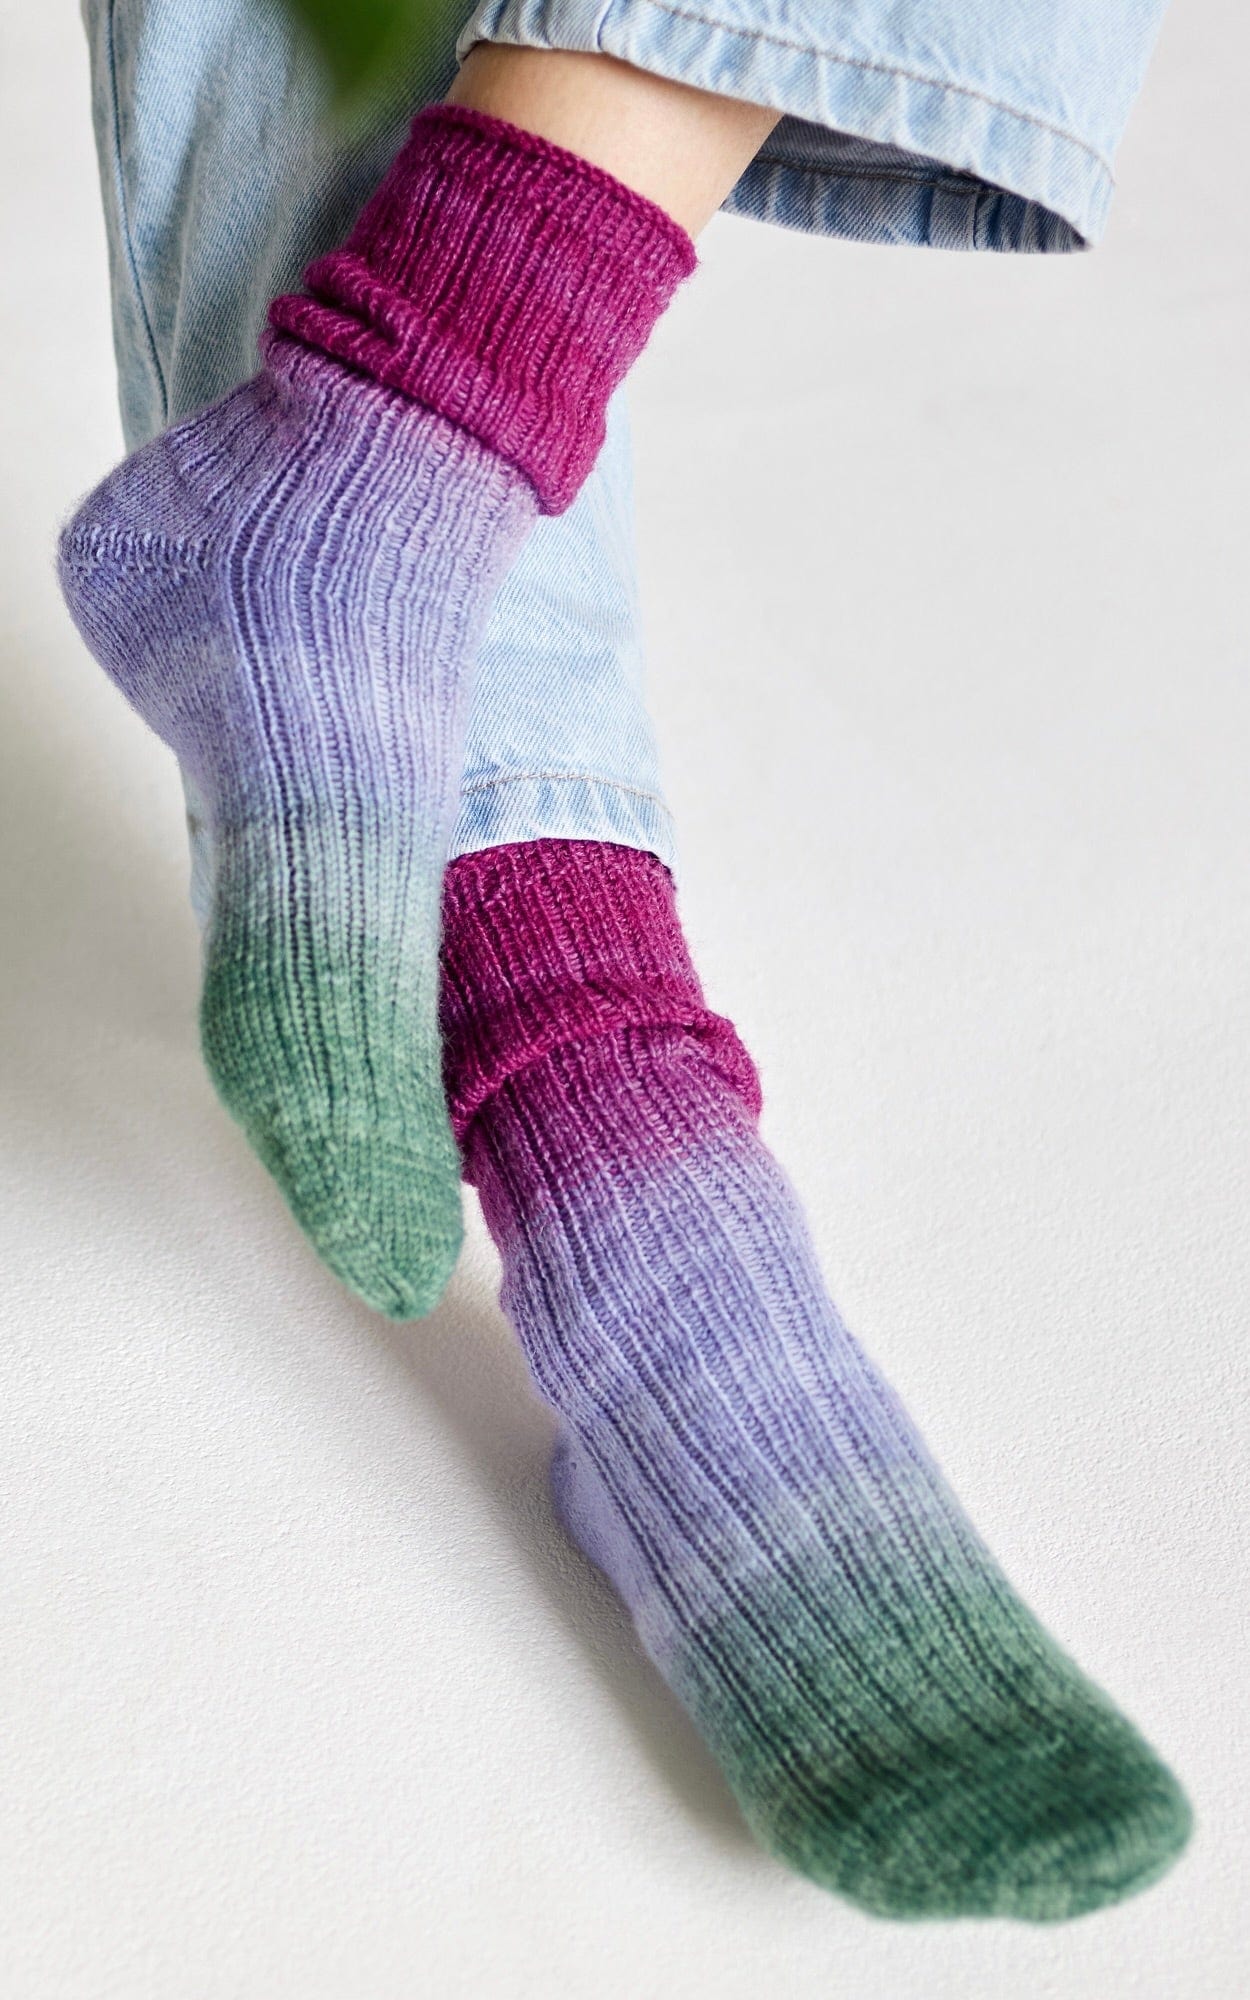 LANA GROSSA Strickset Socken - MEILENWEIT 50 MERINO HAND-DYED - Strickset